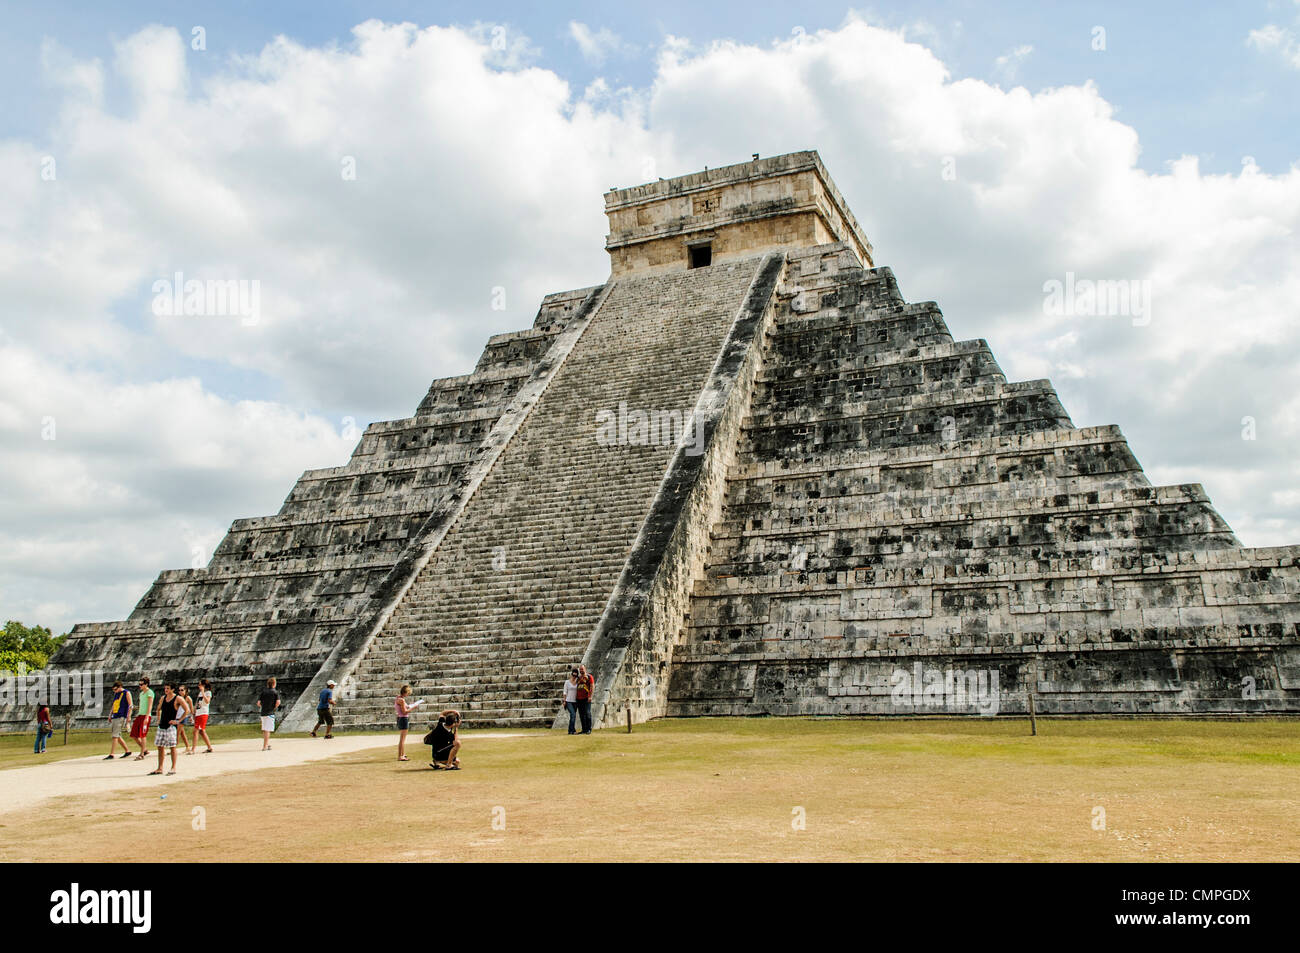 CHICHEN ITZA, Mexique - plan d'ensemble des étapes du Temple de Kukulkan (El Castillo) à la Zone archéologique de Chichen Itza, les ruines d'une importante ville de la civilisation Maya au coeur de la péninsule du Yucatan au Mexique. Banque D'Images